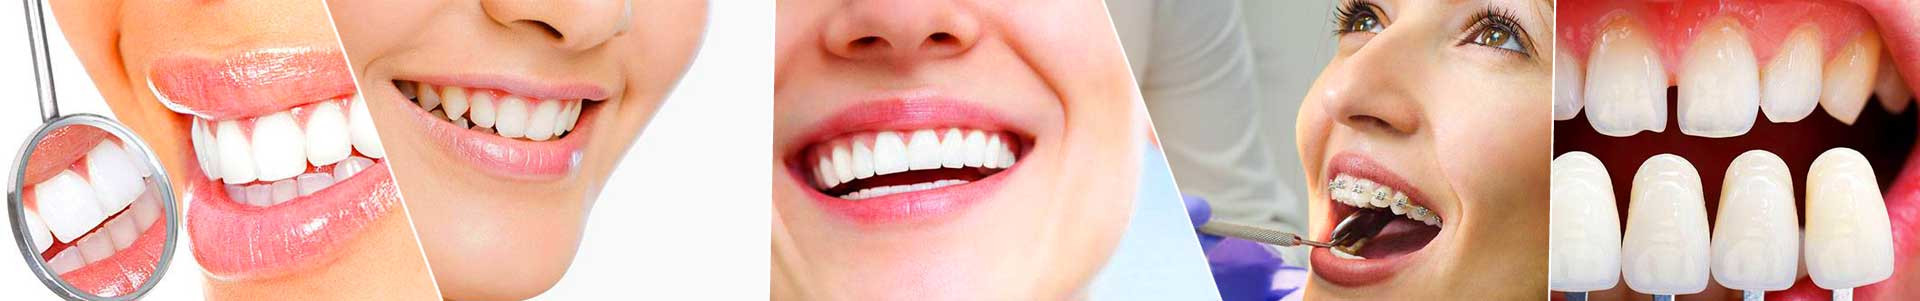 بهترین خرید دندانکده سلامت-دندانپزشکی دکتر کریمی تهران با بیشترین درصد تخفیف در قیمت - 41%